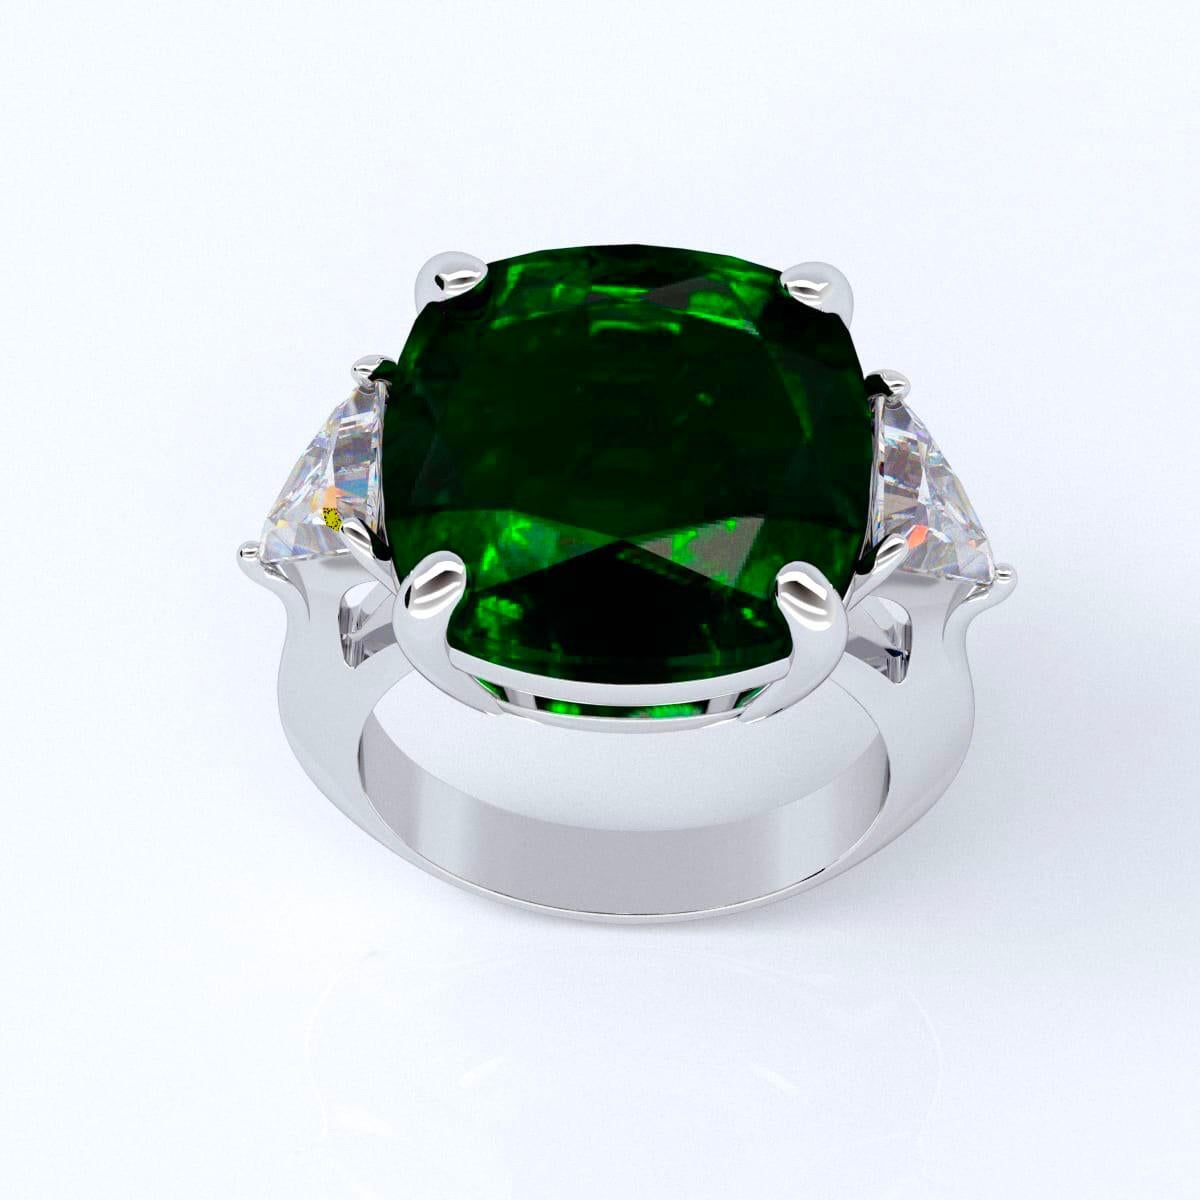 Von Emilio Jewelry, einem bekannten und angesehenen Großhändler mit Sitz auf der berühmten Fifth Avenue in New York,
Im Mittelpunkt dieses Rings steht der perfekt geschliffene, quadratische Kissen-Smaragd, der in dieser Form und Größe nur sehr